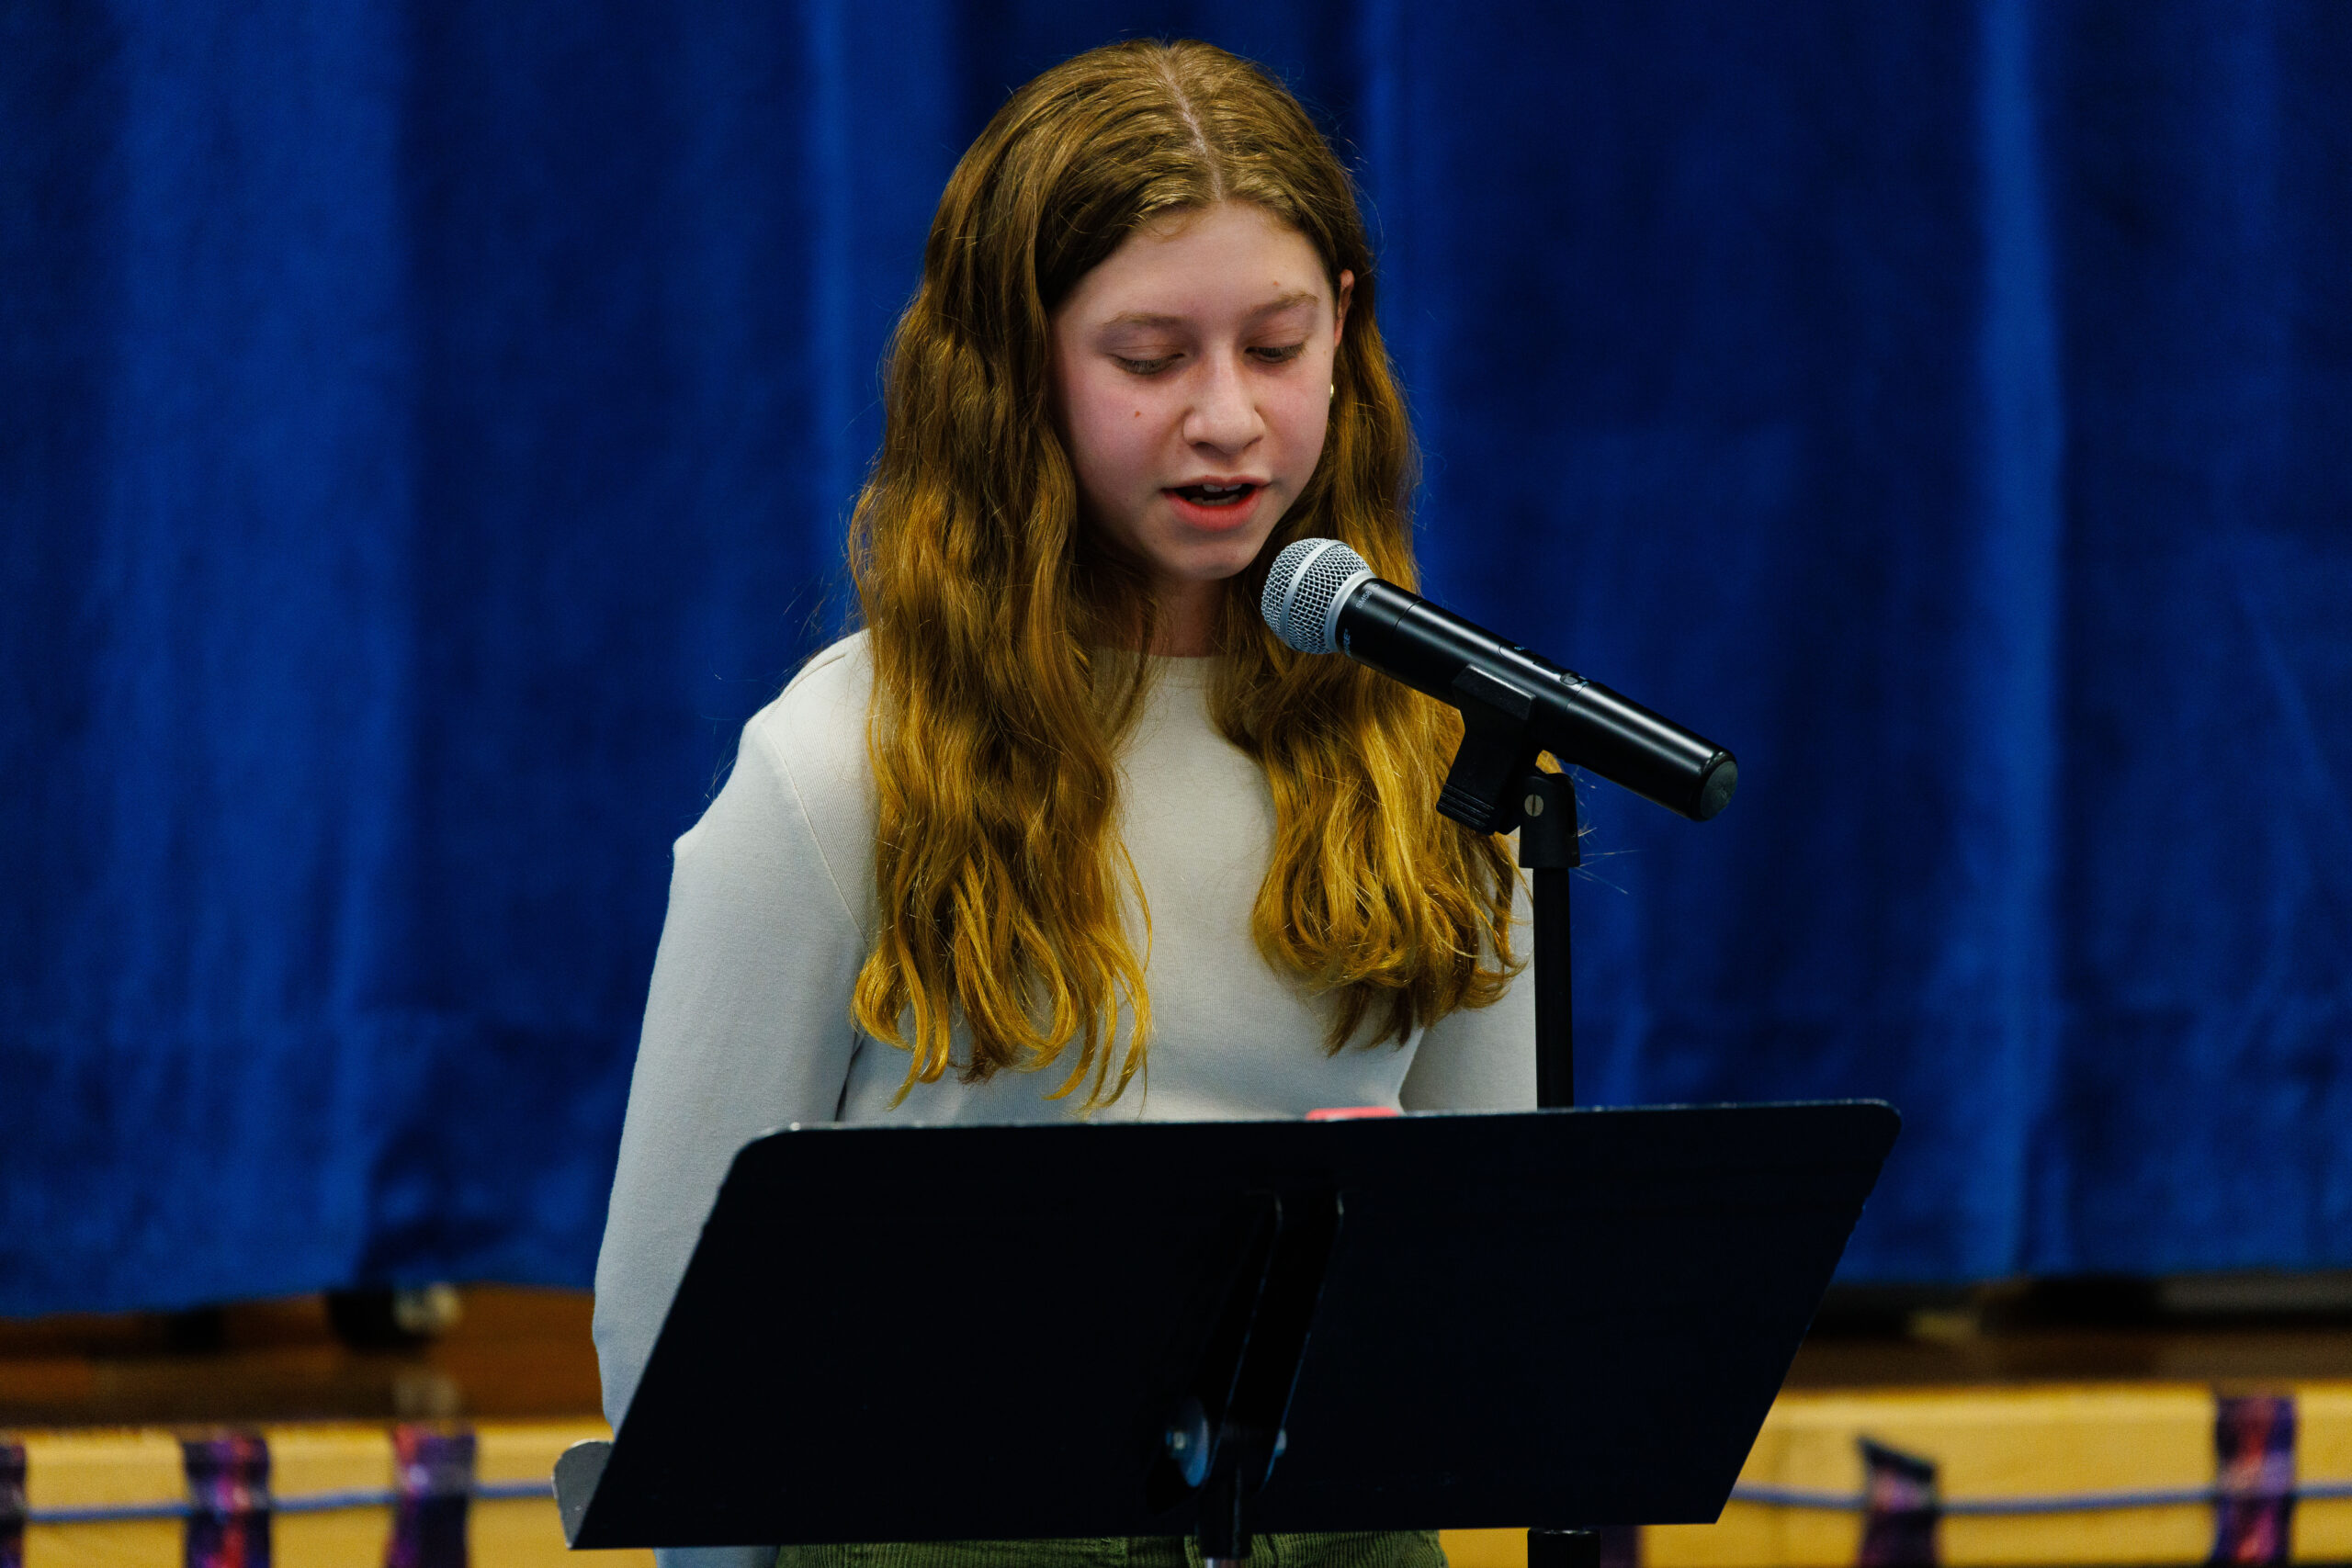 Student reciting poem